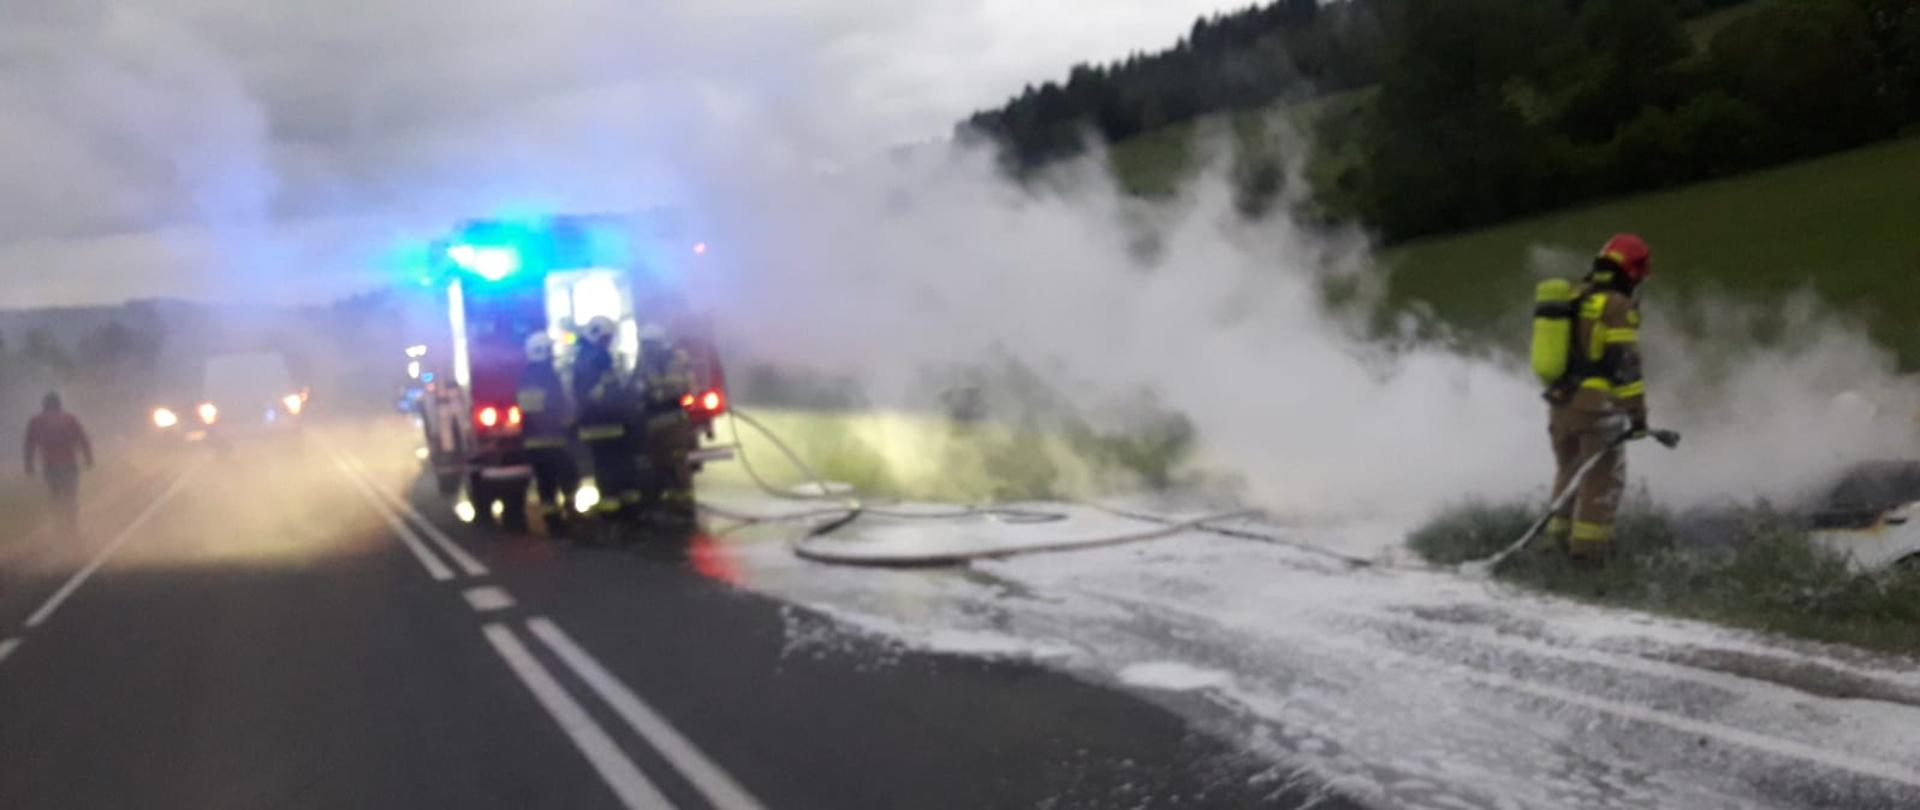 Dym wydobywający się z palącego się samochodu w rowie.